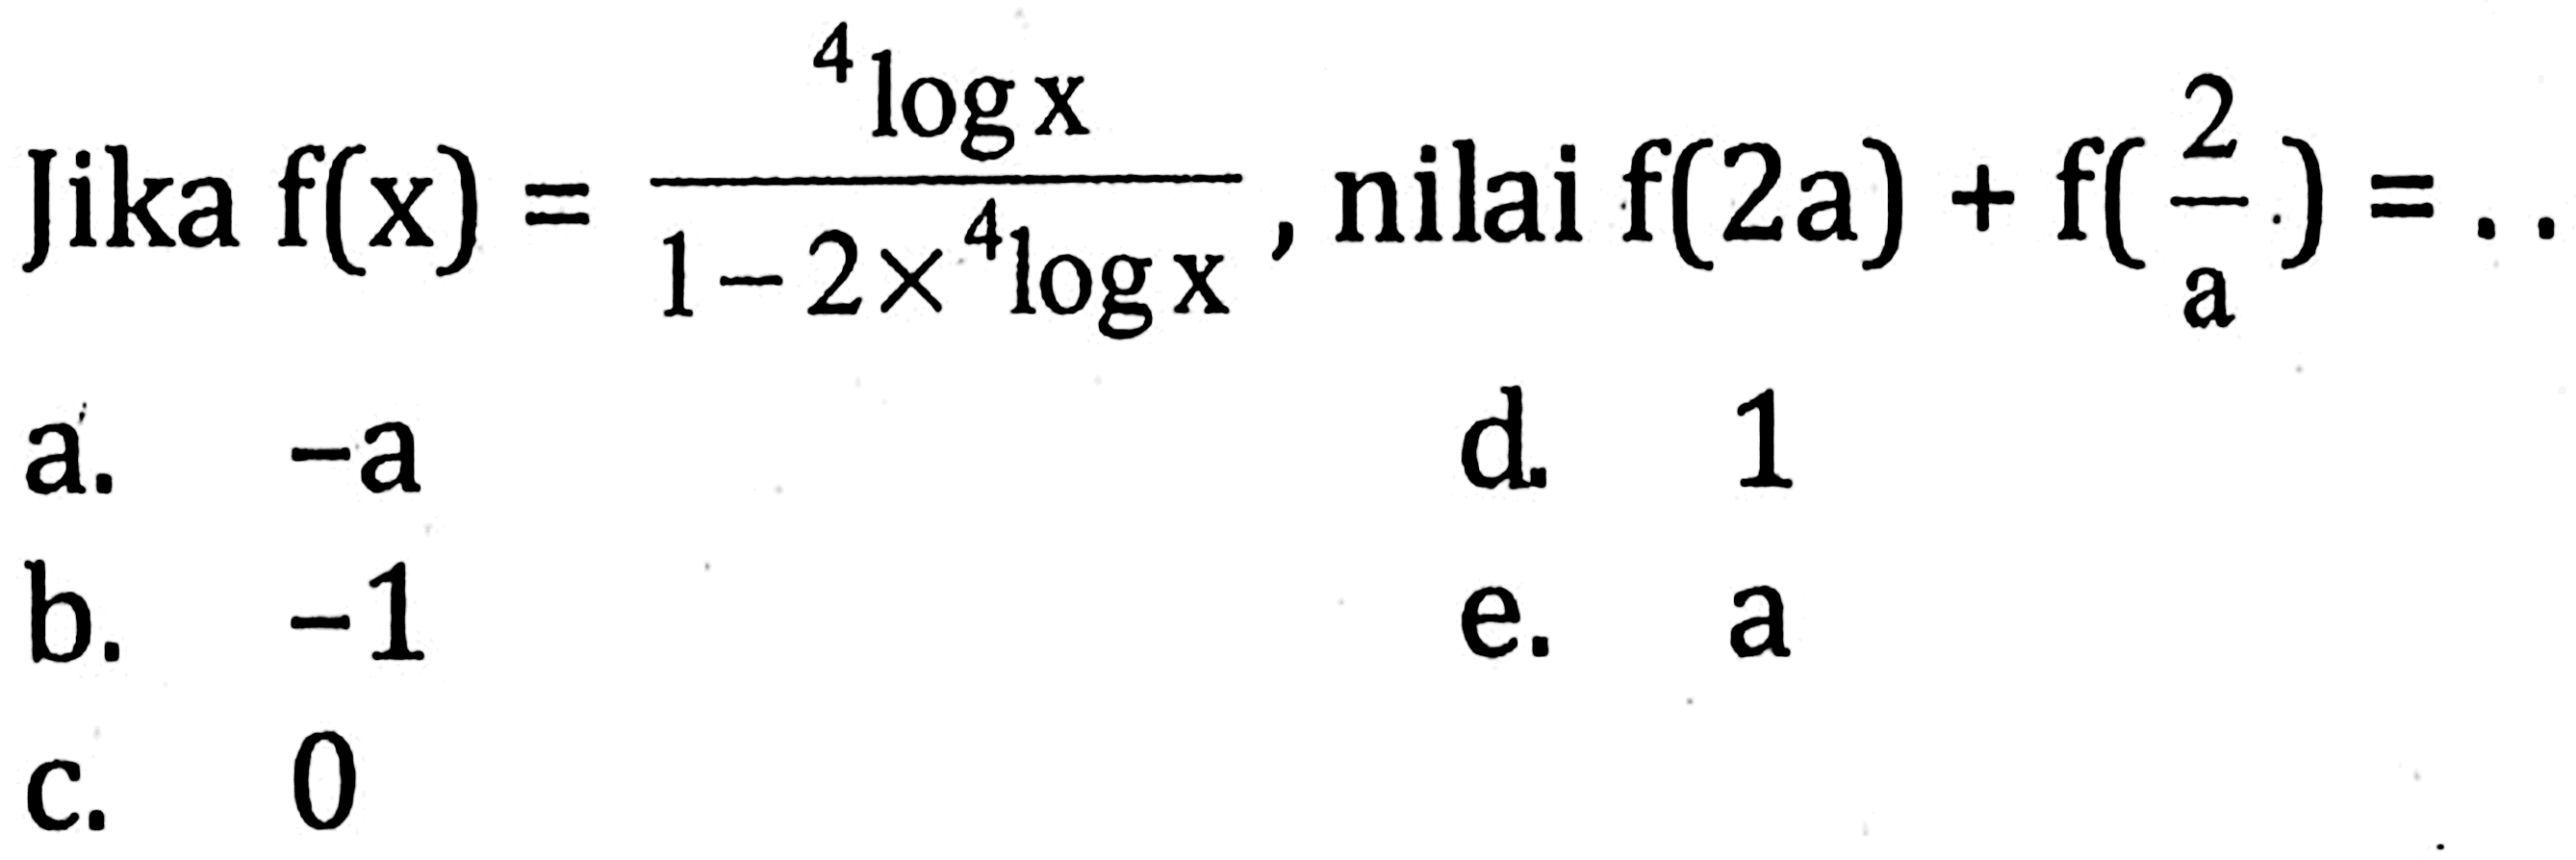 Jika f(x)=4logx/(1-2x4logx), nilai f(2a)+f(2/a)= .... 